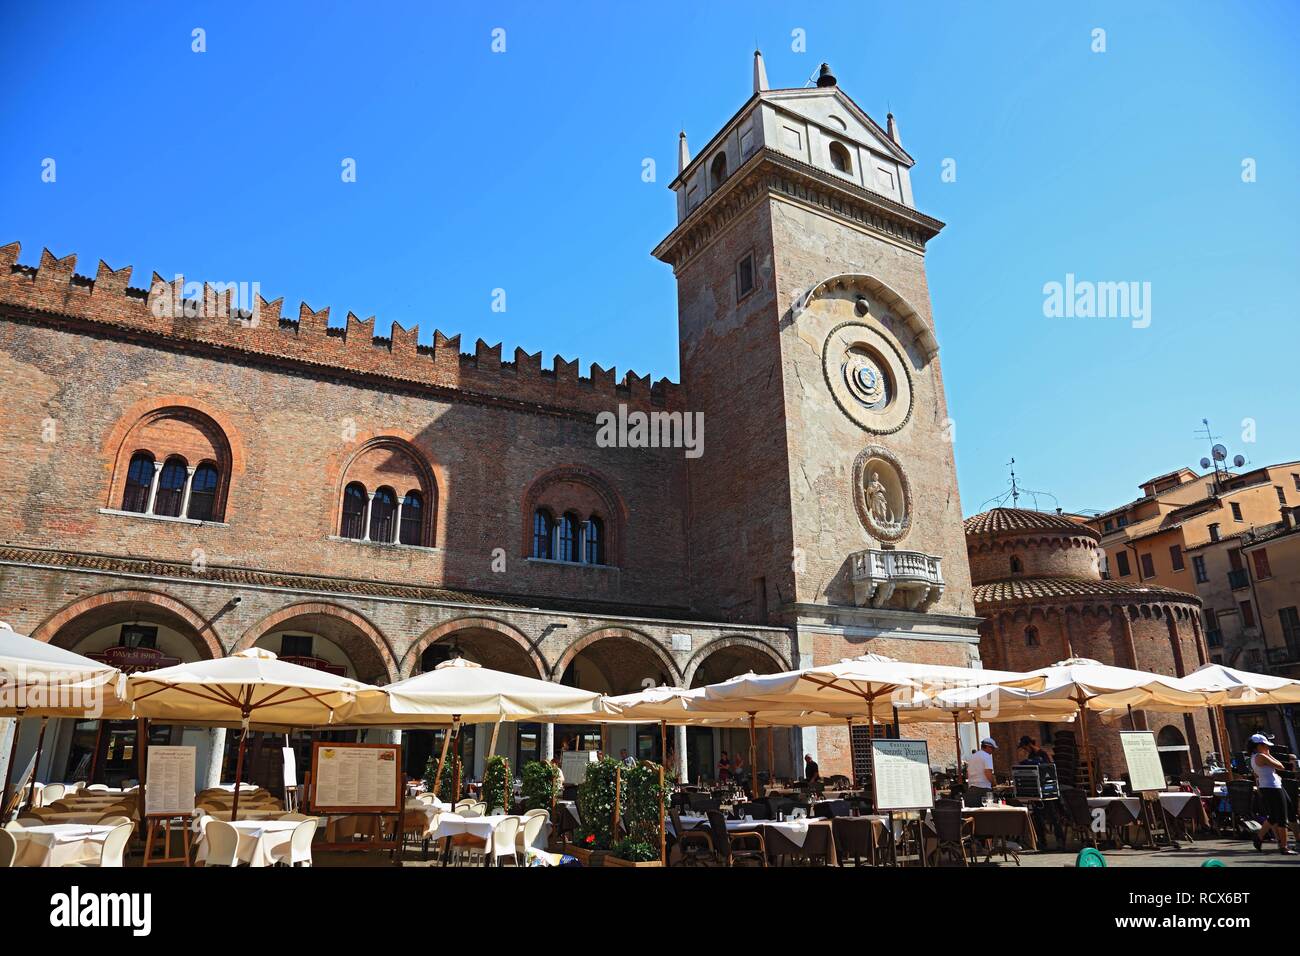 Torre dell Orologio, clock tower, Piazza delle Erbe, Mantua, Mantova, Lombardy, Italy, Europe Stock Photo